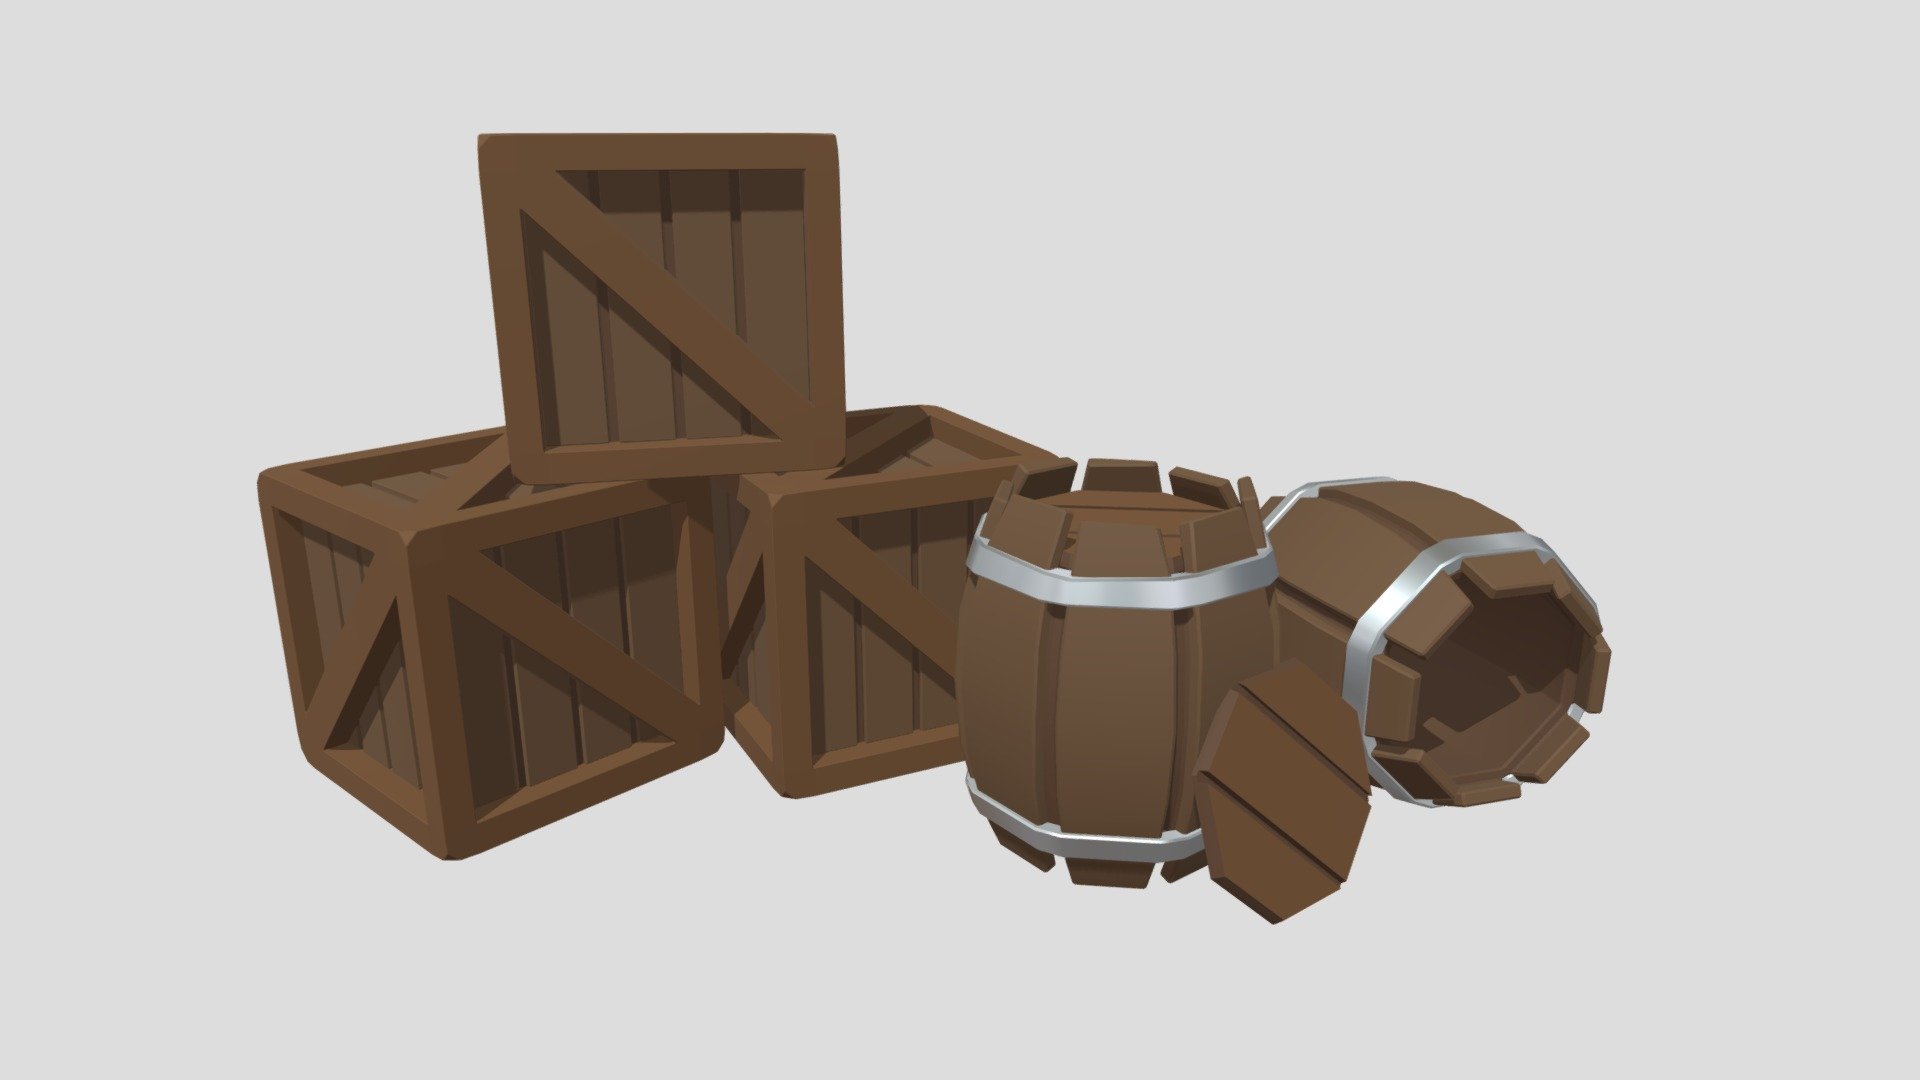 Wooden Crates + Barrels